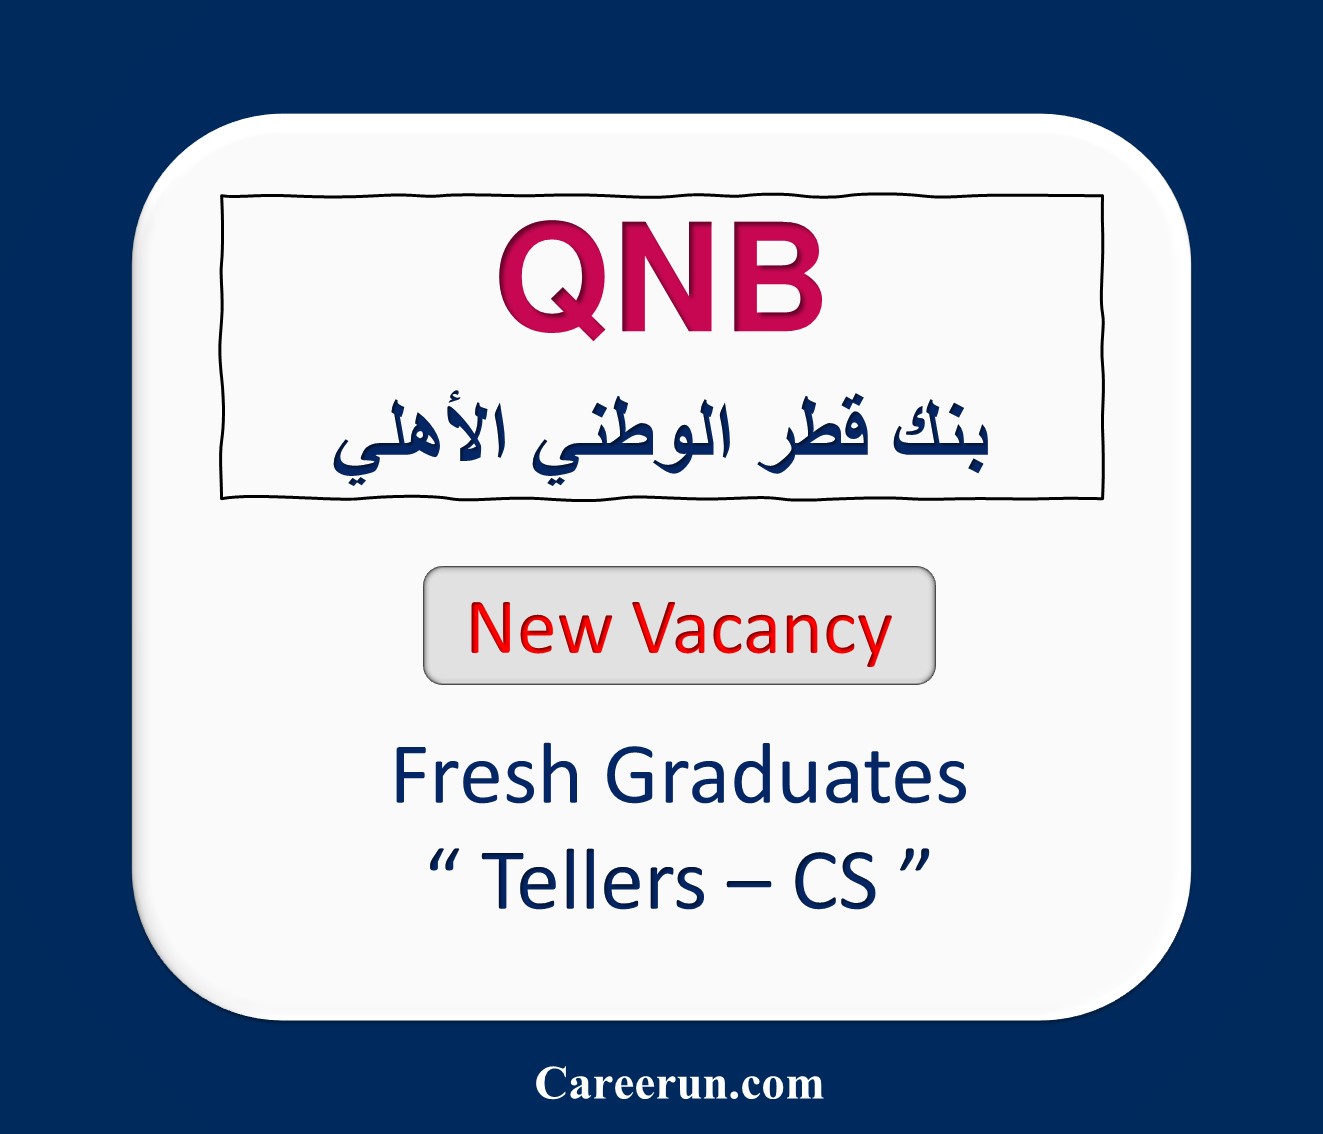 Qnb Careers